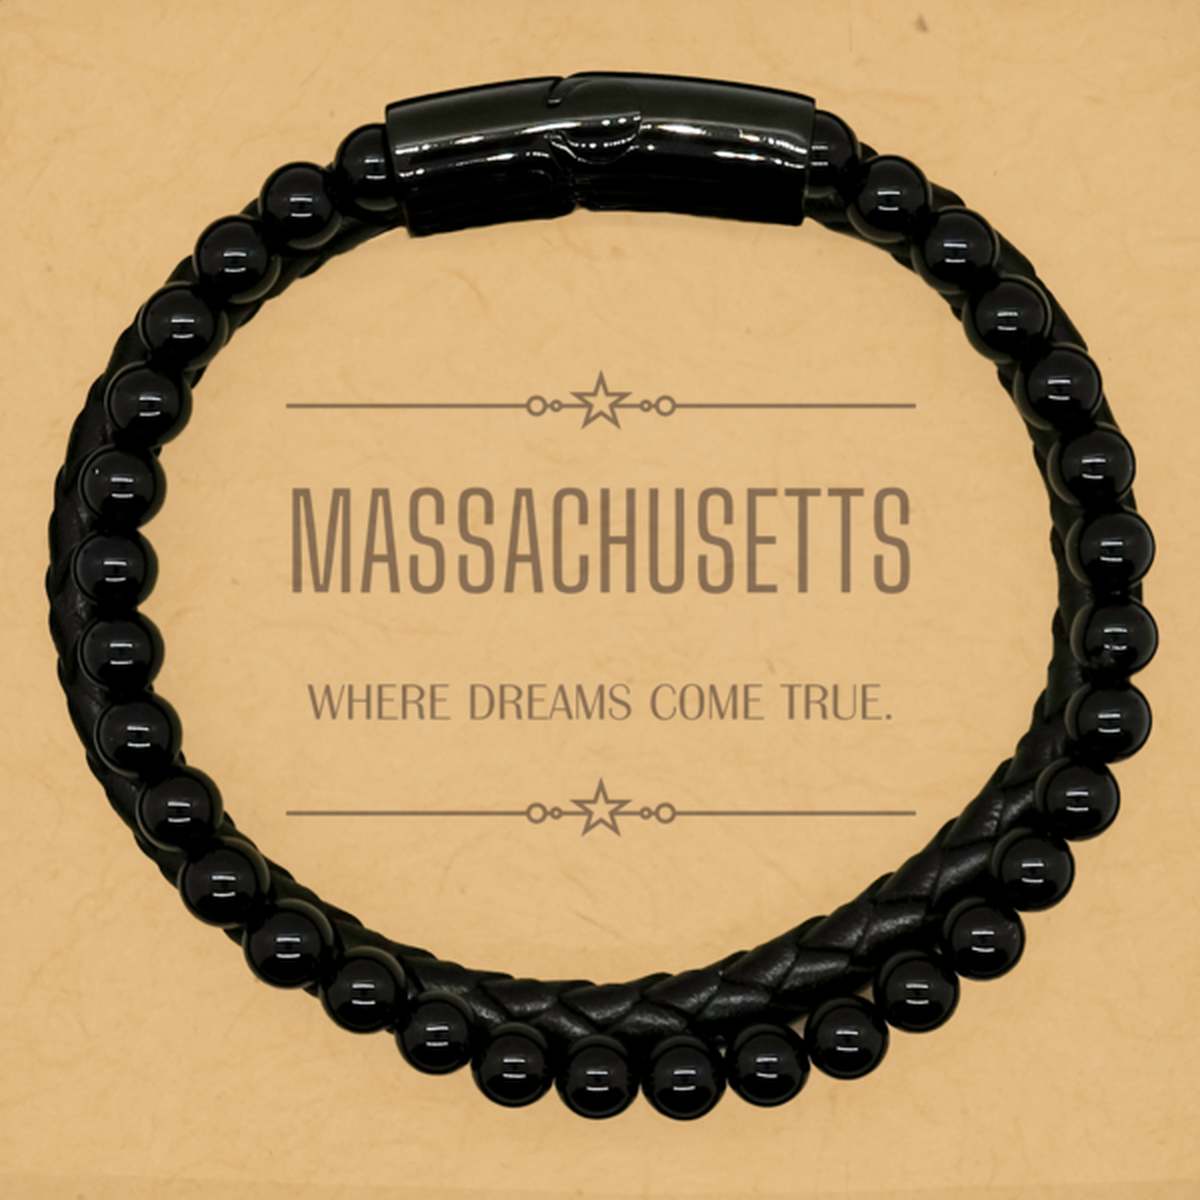 Love Massachusetts State Stone Leather Bracelets, Massachusetts Where dreams come true, Birthday Inspirational Gifts For Massachusetts Men, Women, Friends